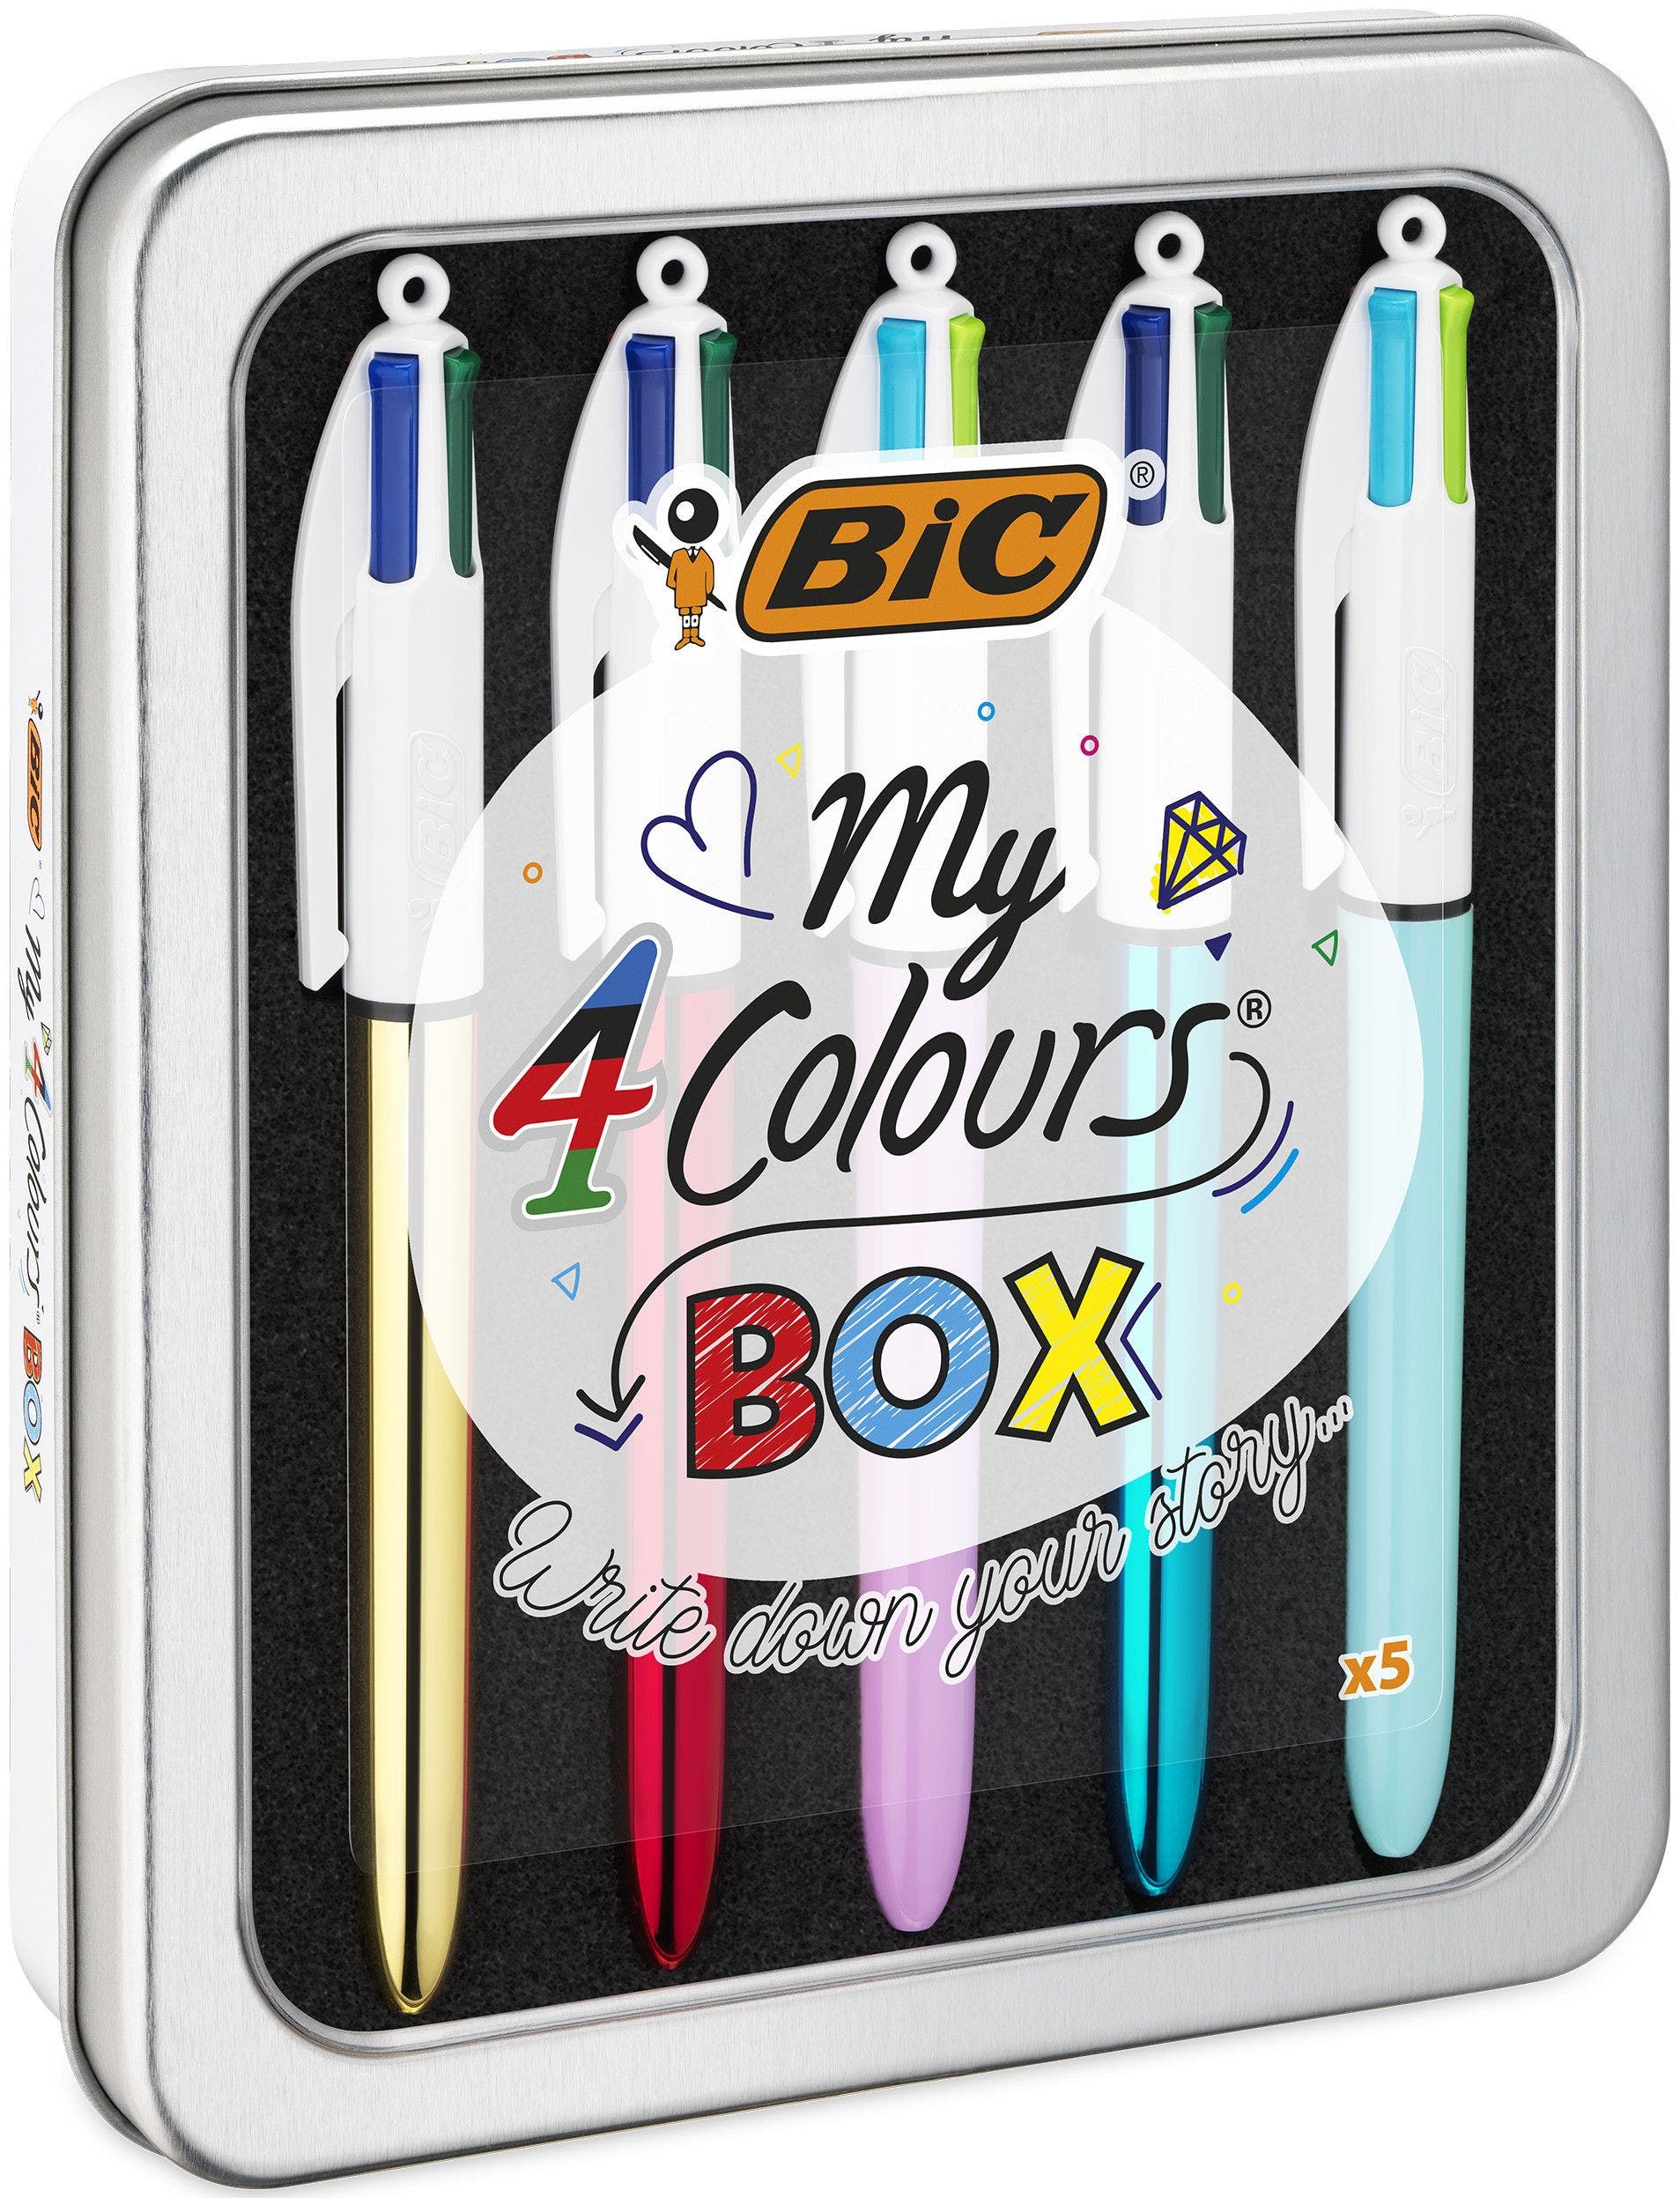 Pack con 5 bolígrafos Bic Cristal colores surtidos